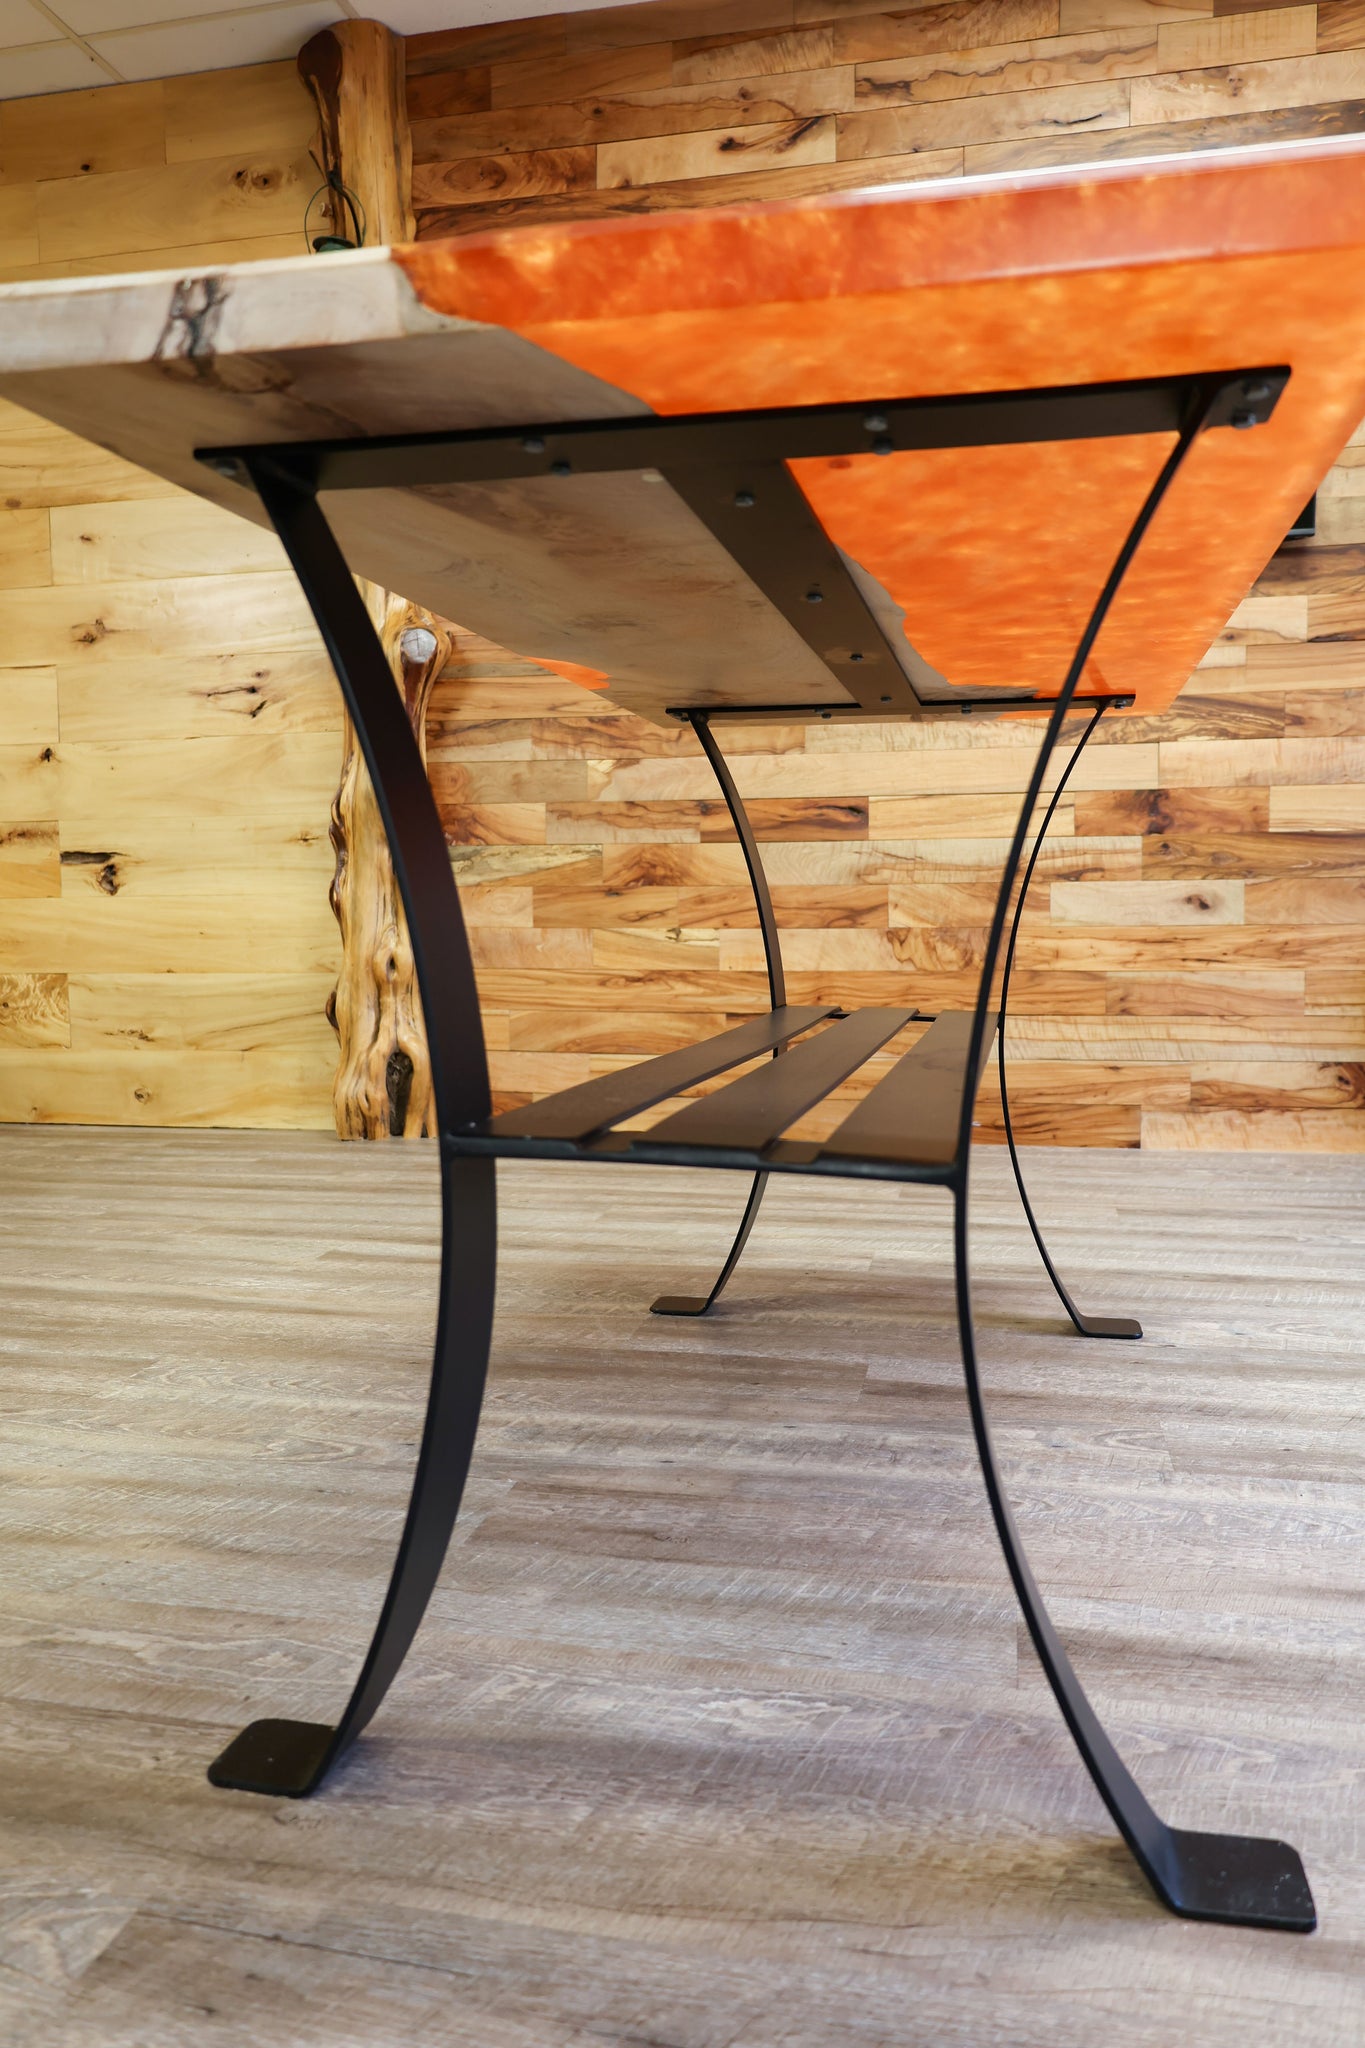 Maple/Epoxy (Orange)Table with Rolled Black Flat Bar Base with shelf- Island - #87